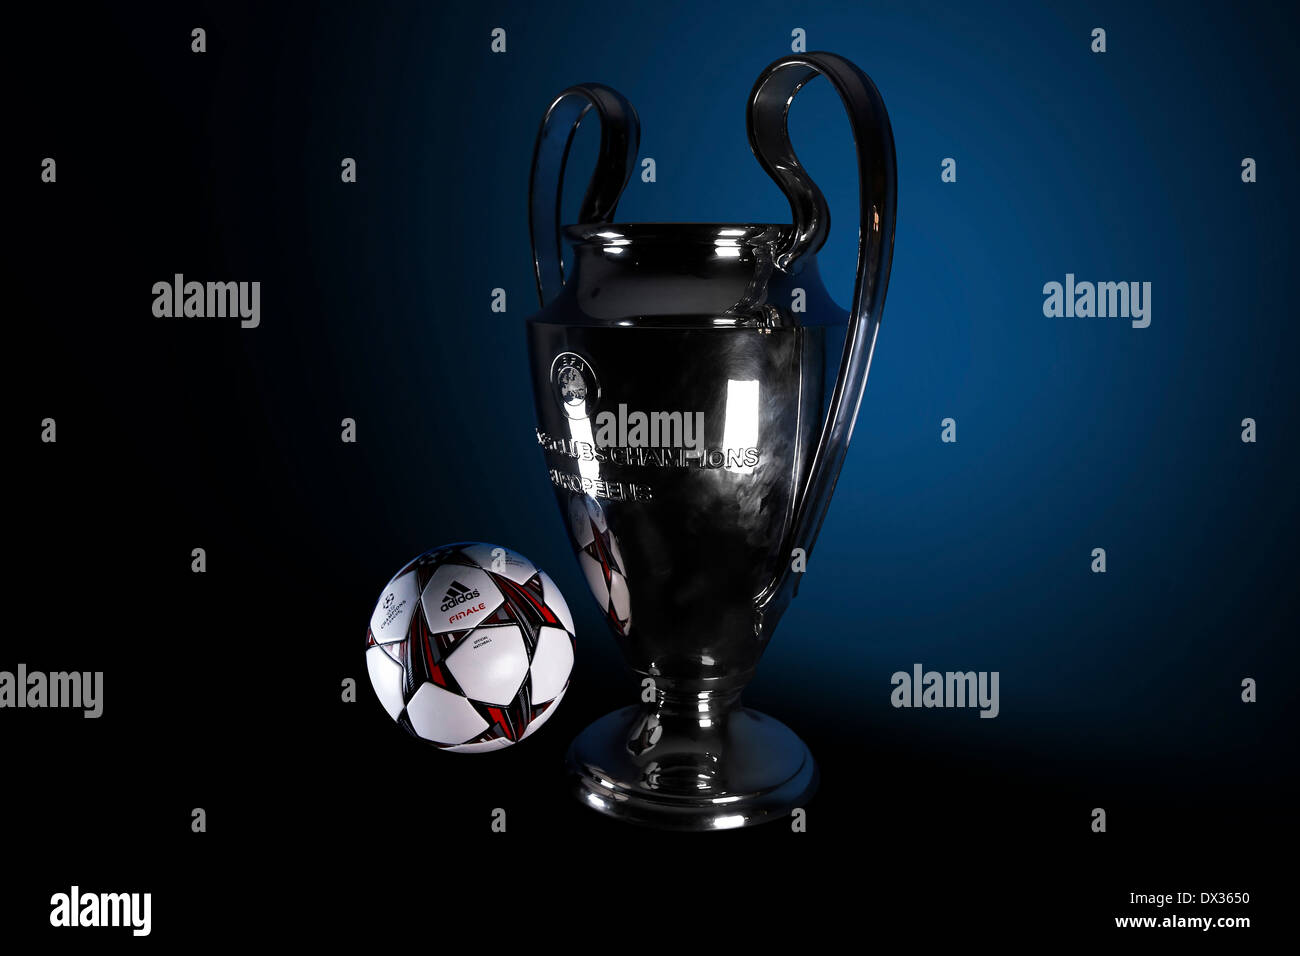 Offizieller Spielball Finale Und Der Uefa Champions League Trophae Stockfotografie Alamy